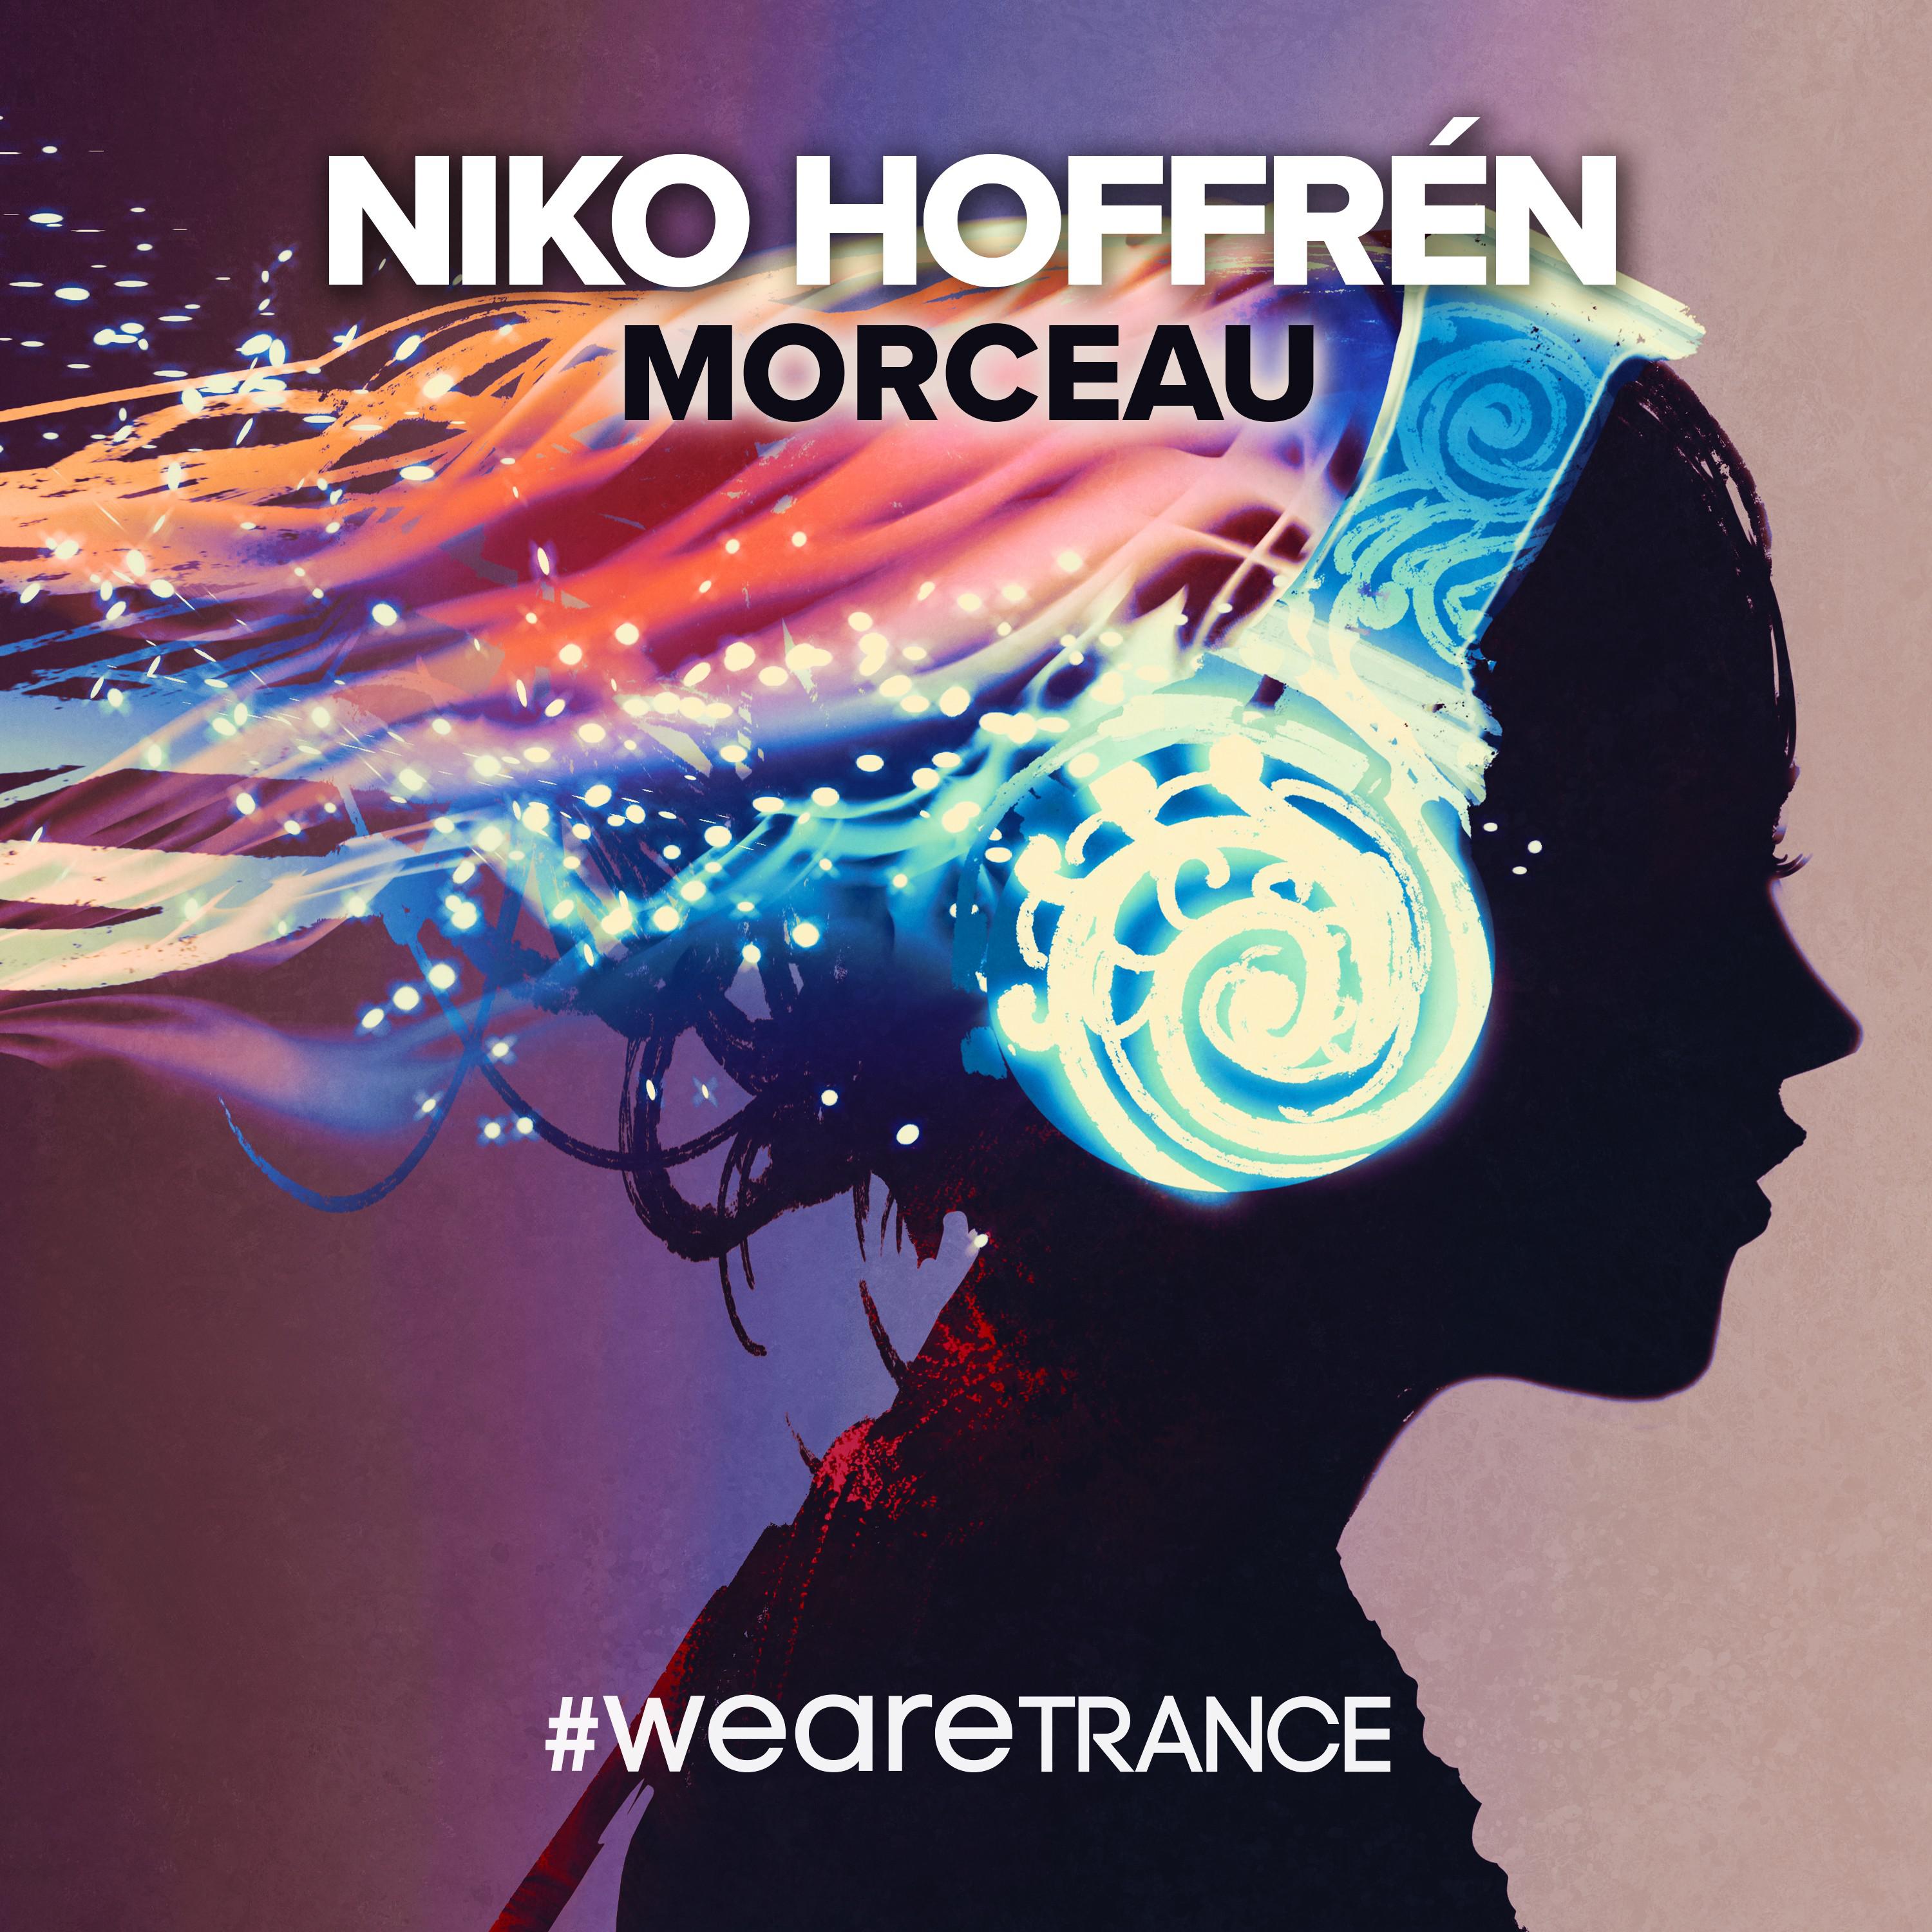 Niko Hoffrén - Morceau (Radio Mix)